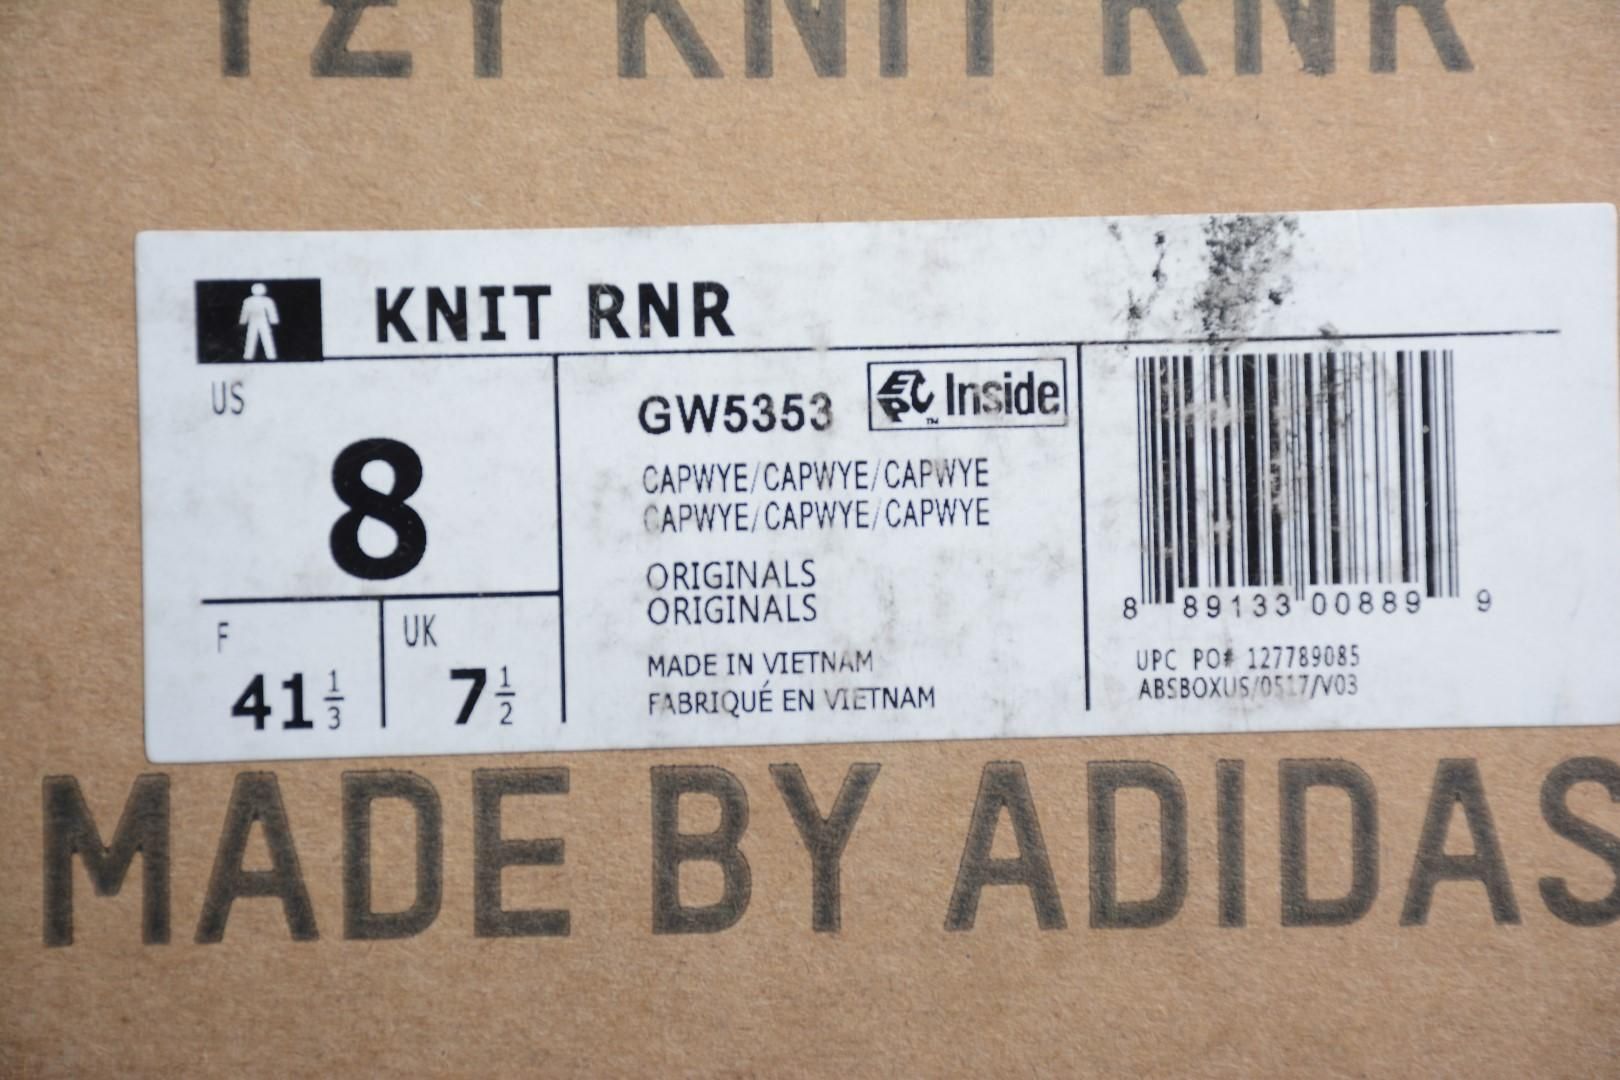 adidasMENS Yeezy Knit RNR - Sulfur